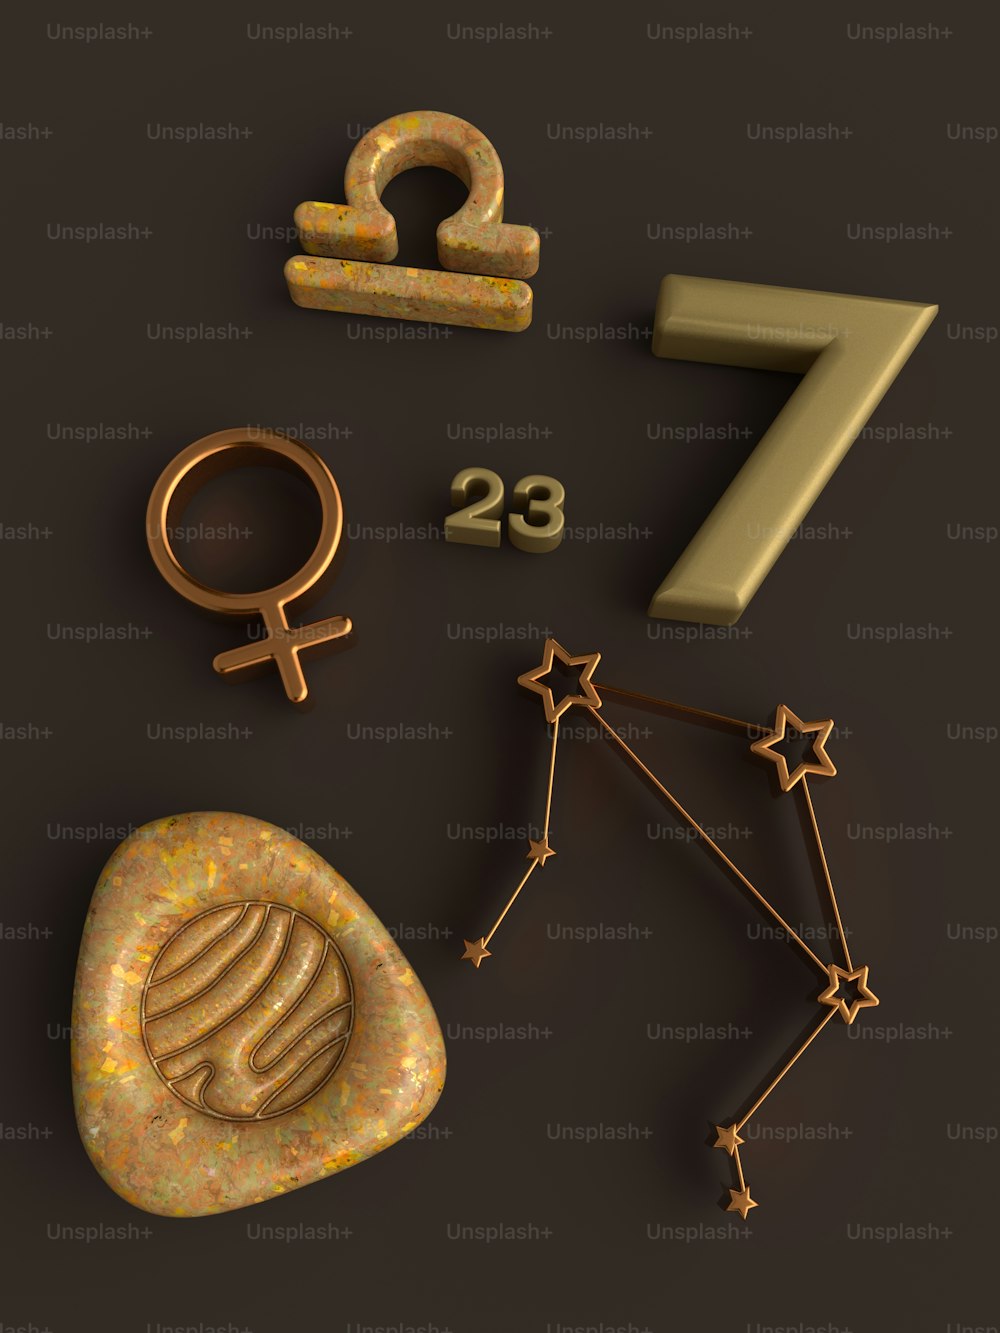 Un certain nombre de symboles astrologiques sont représentés